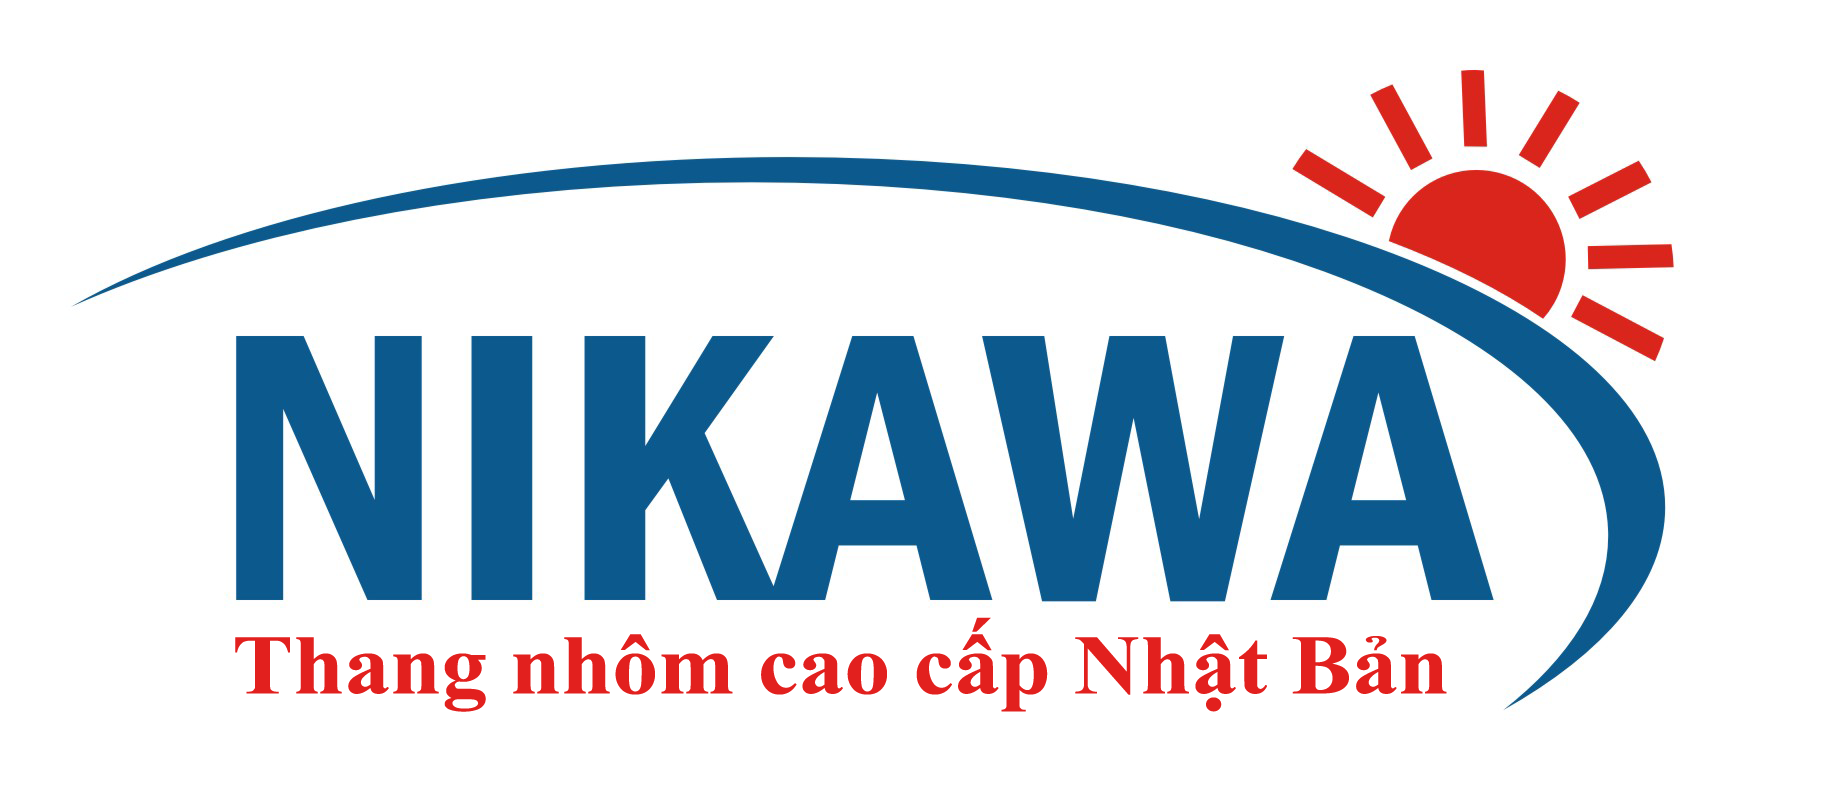 Thang Nikawa và sự quan tâm của doanh nghiệp tới sự an toàn của nhân viên